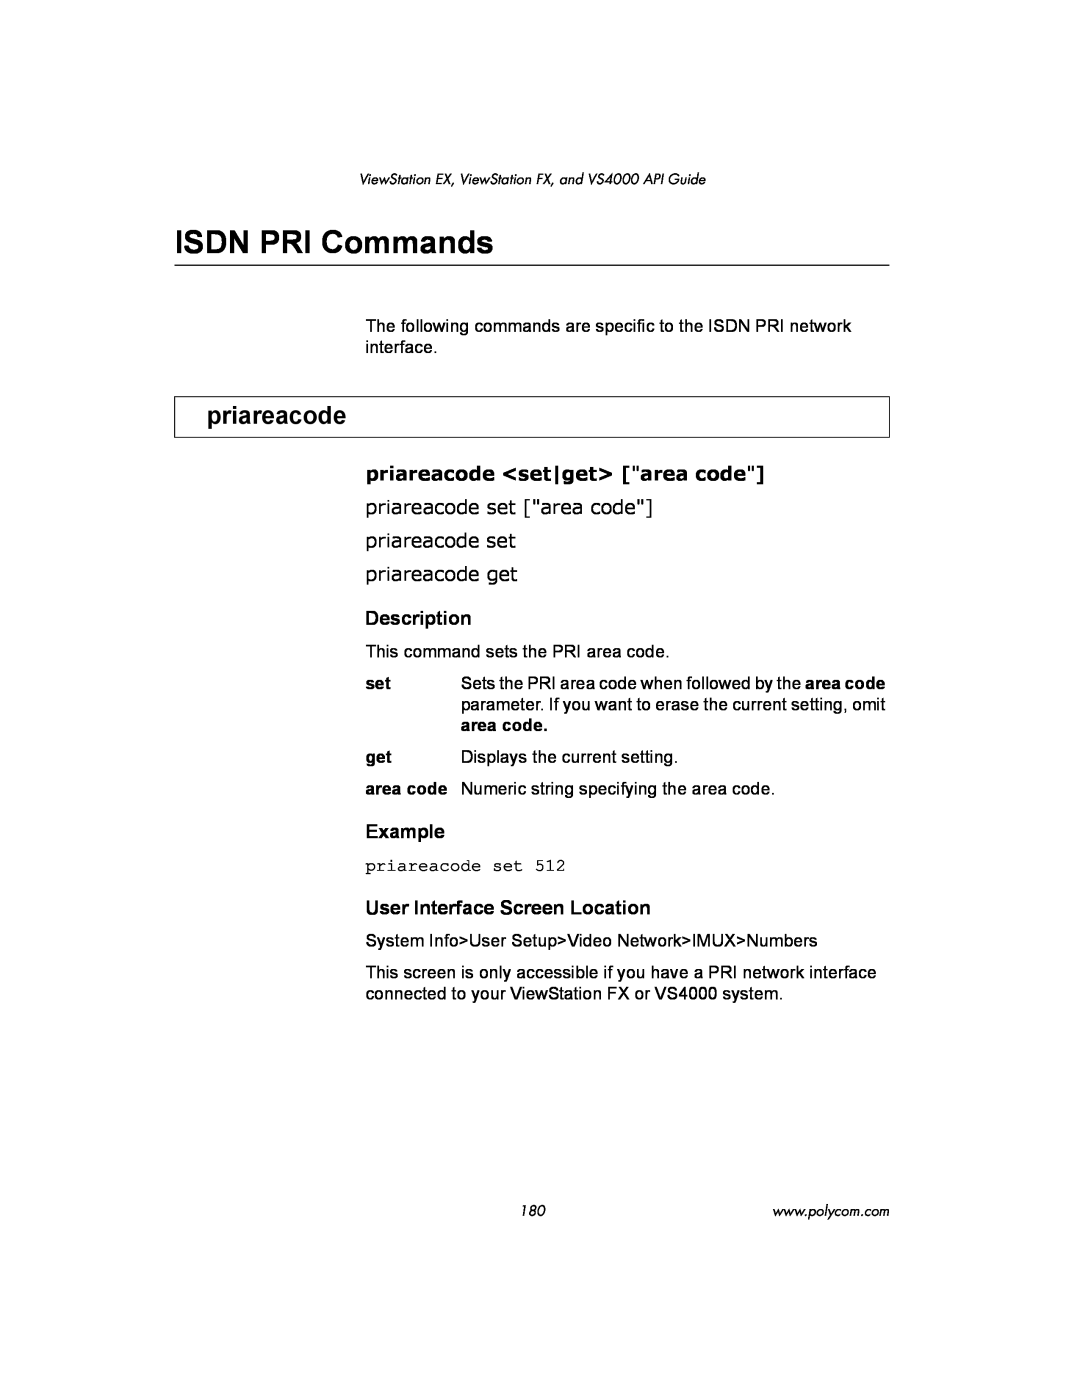 Polycom VIEWSTATION EX manual ISDN PRI Commands, priareacode <set|get> area code, Description, Example 